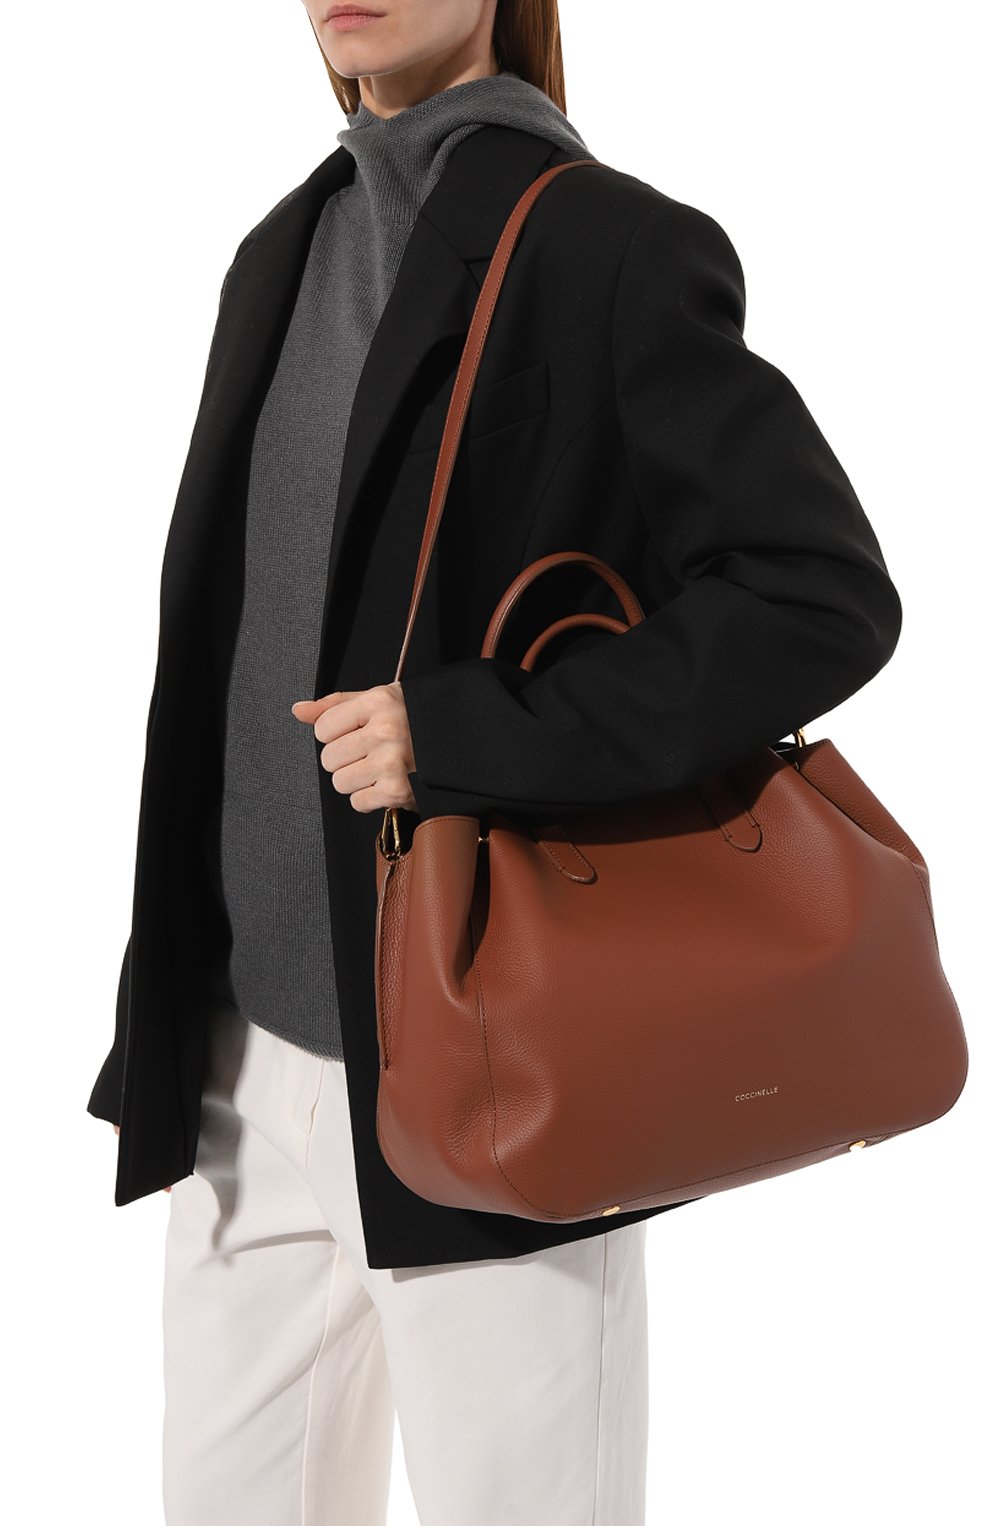 Женский коричневый сумка soft-wear medium COCCINELLE купить в  интернет-магазине ЦУМ, арт. E1 P5A 18 01 01